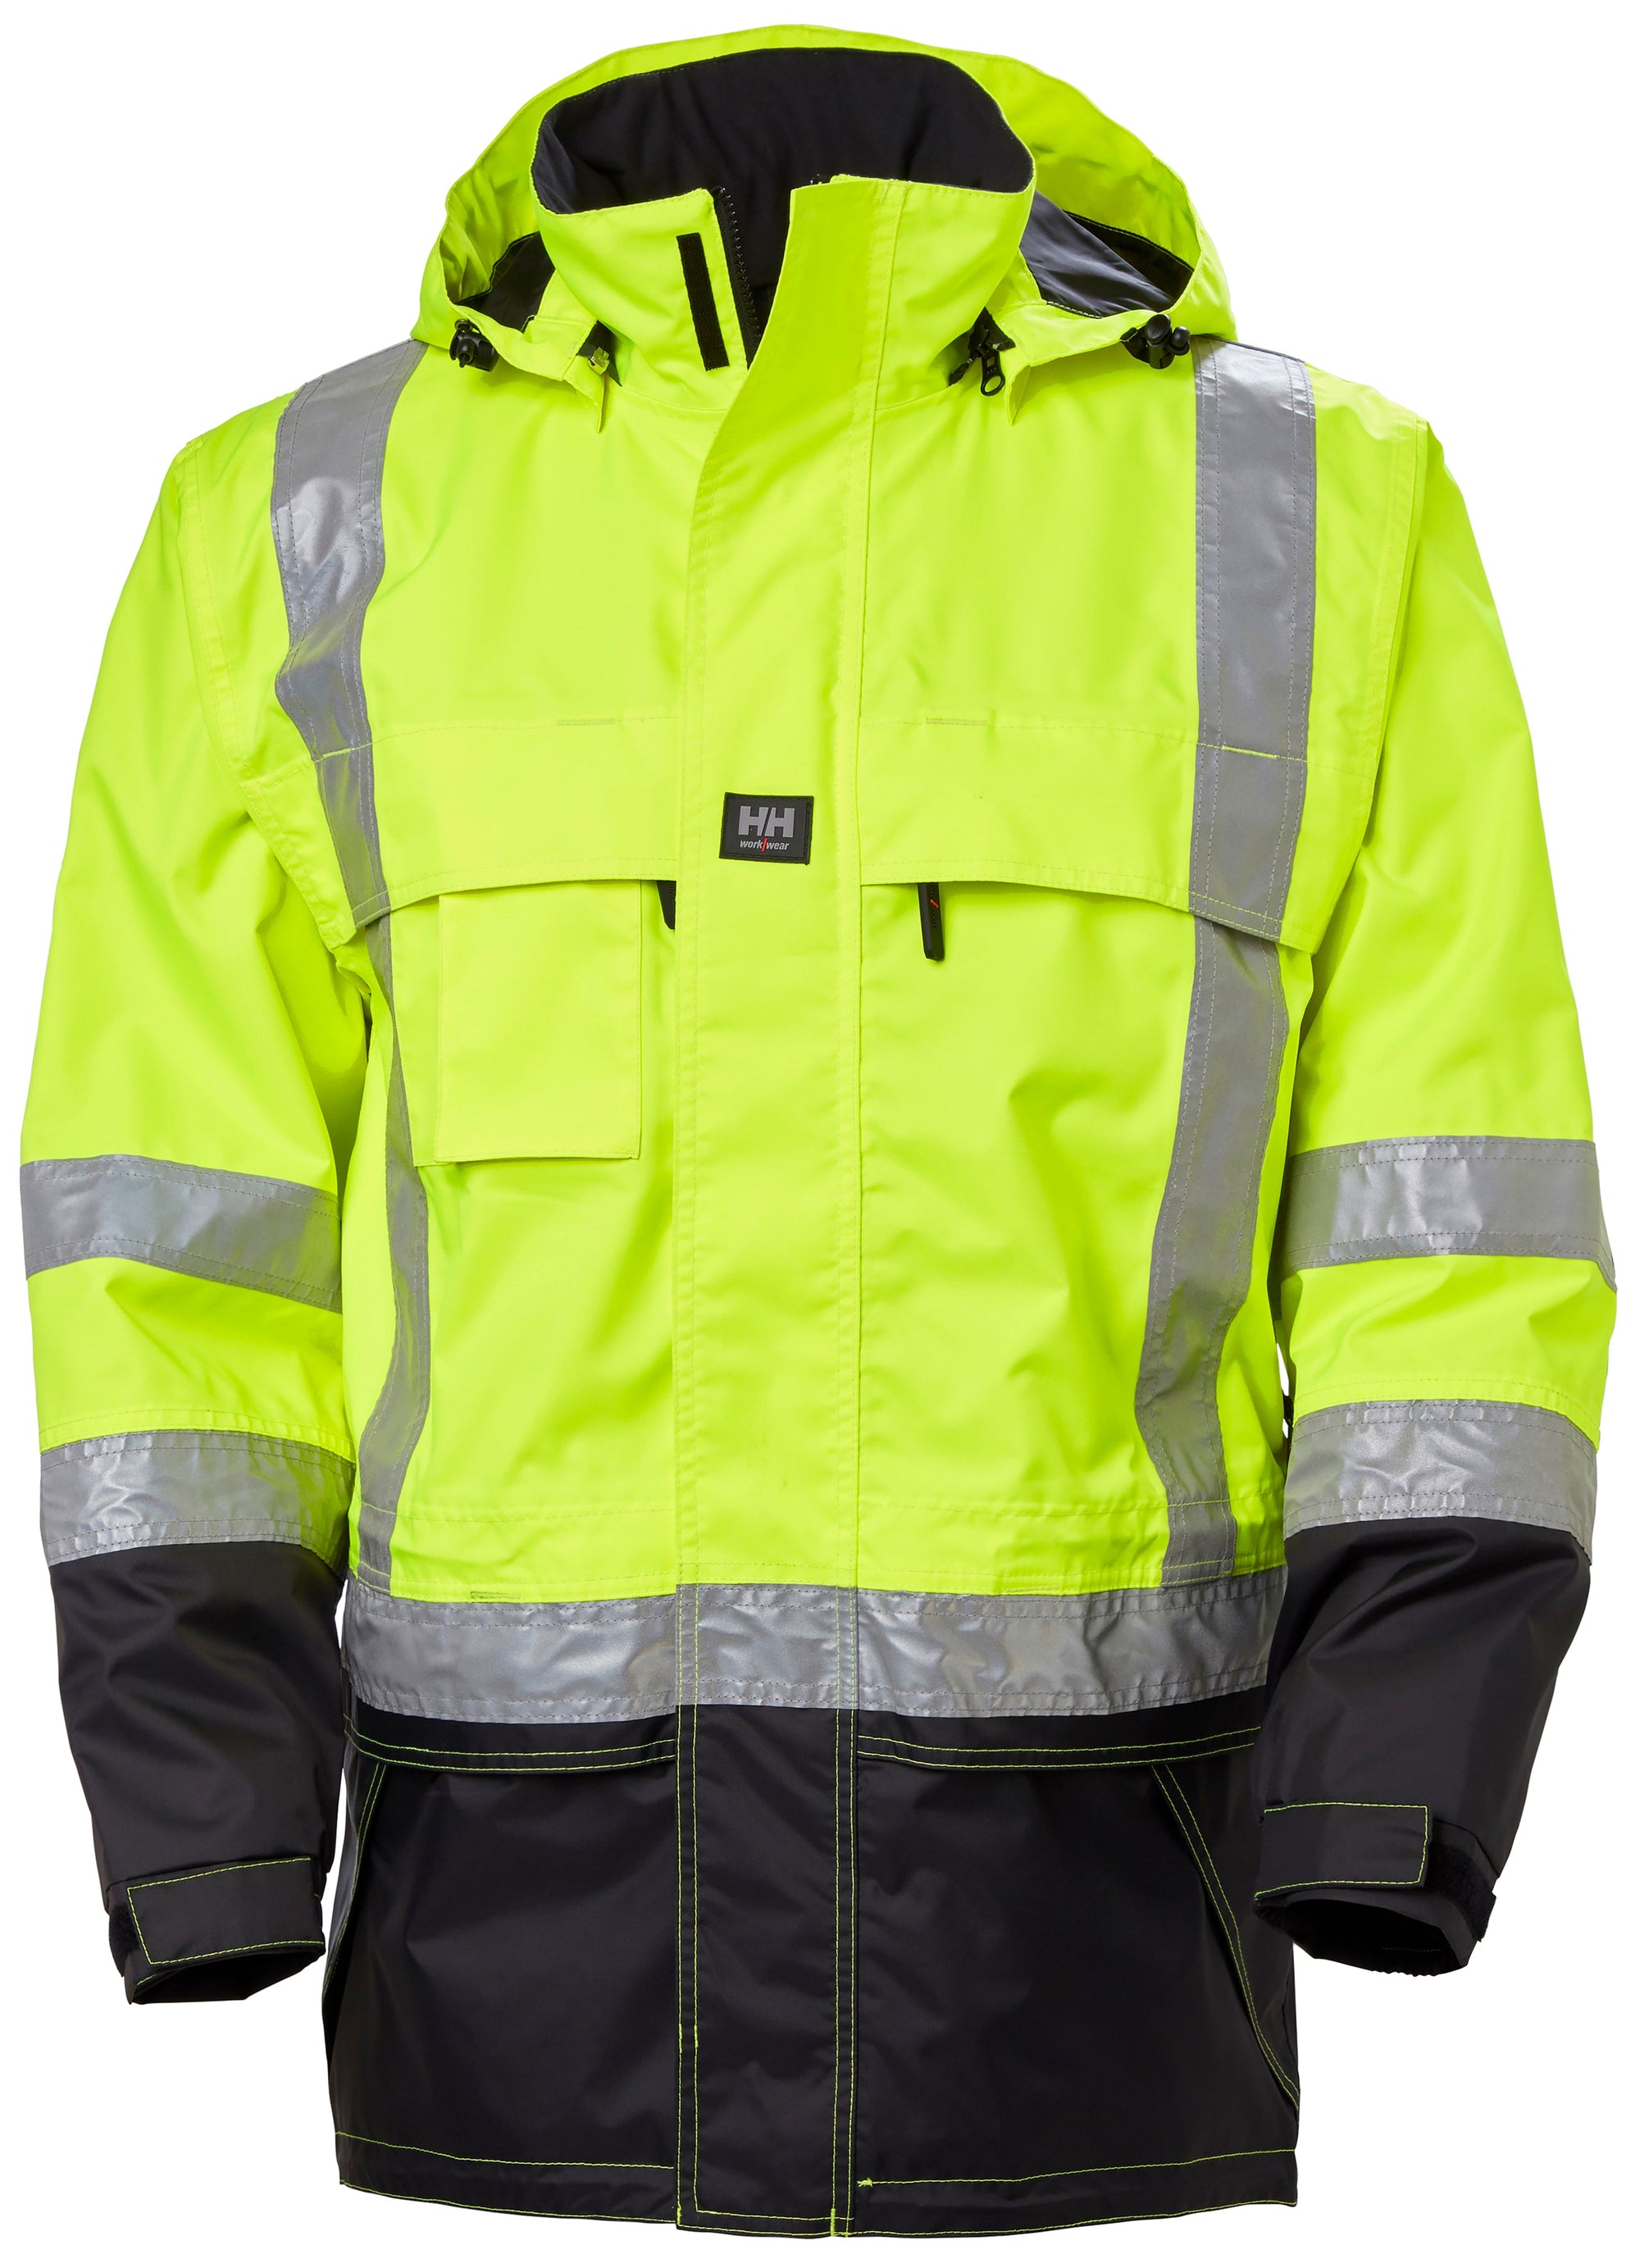 Helly Hansen Men's Potsdam Ansi Jacket - Work World - Workwear, Work Boots, Safety Gear